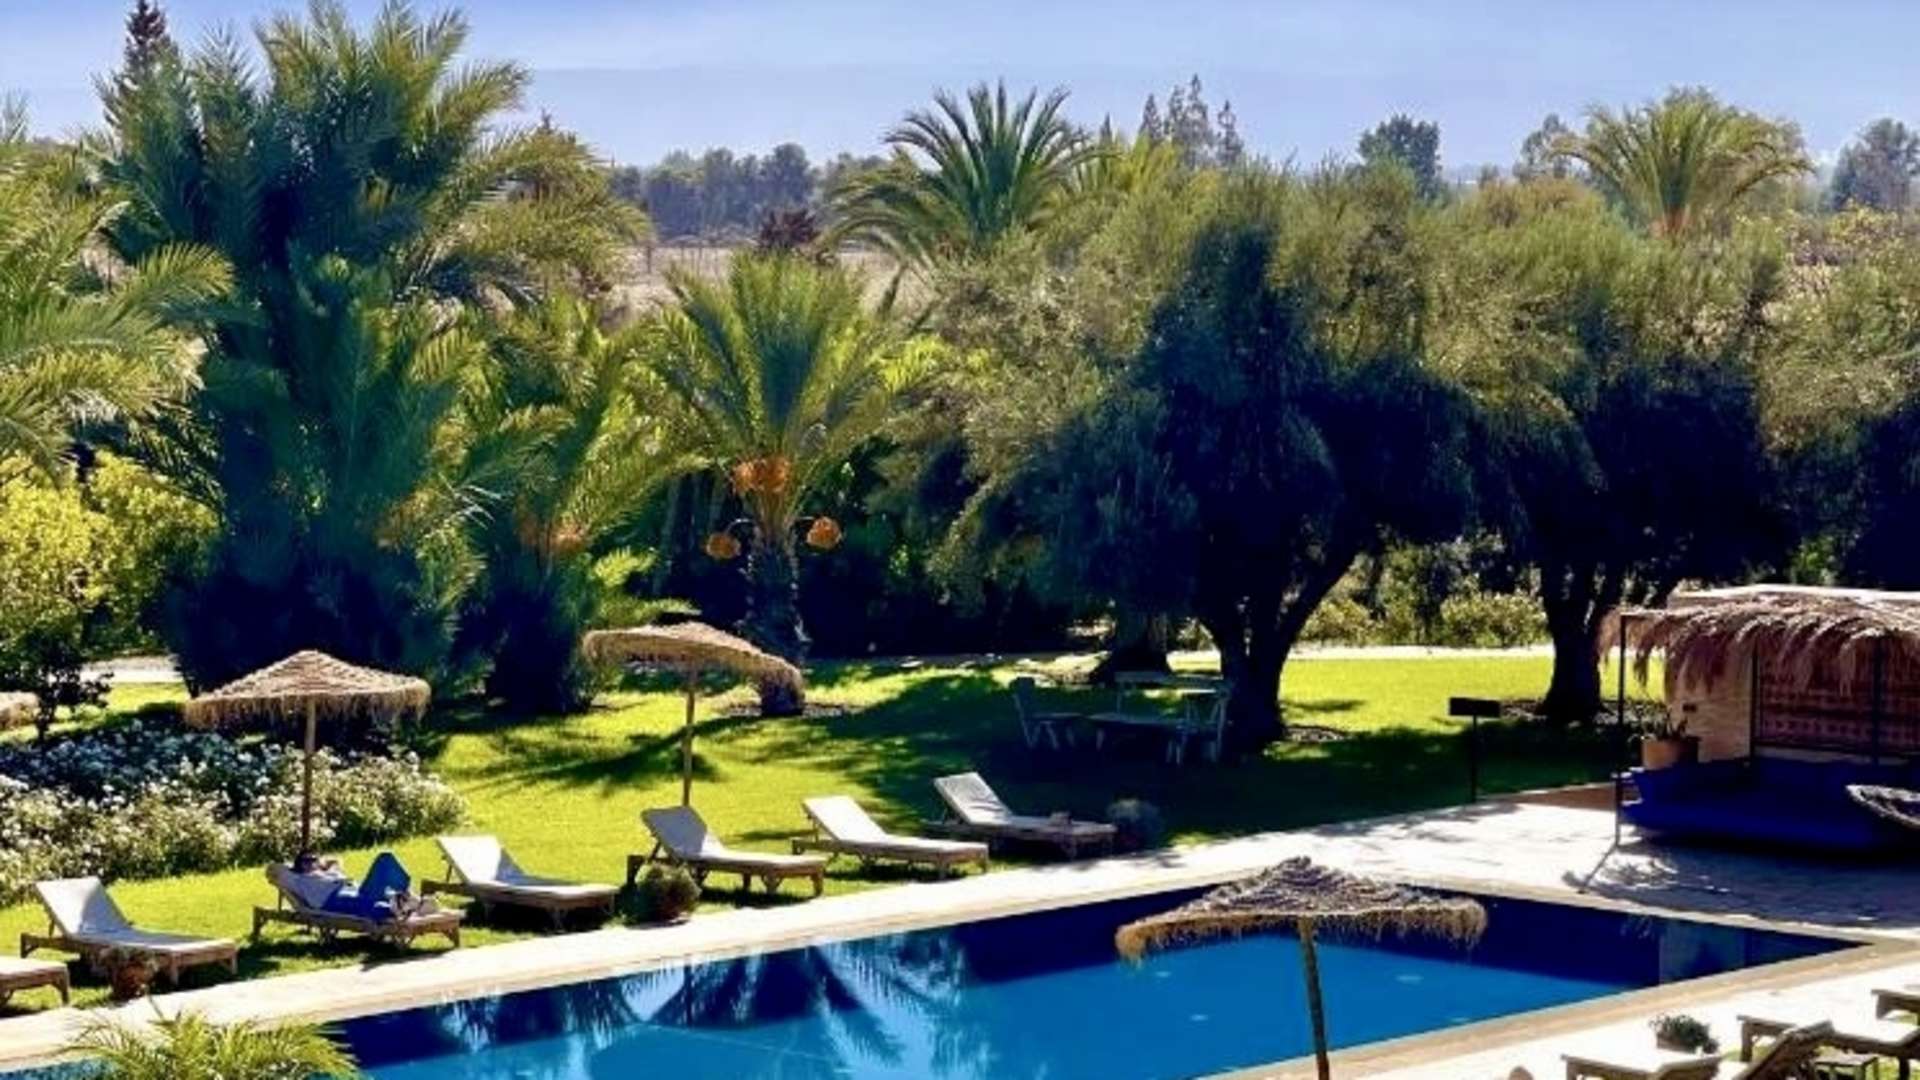 Location de vacances,Villa,Villa 6 chambres dans un domaine de 3 hectares de jardins verdoyants,Marrakech,Route de l'Ourika